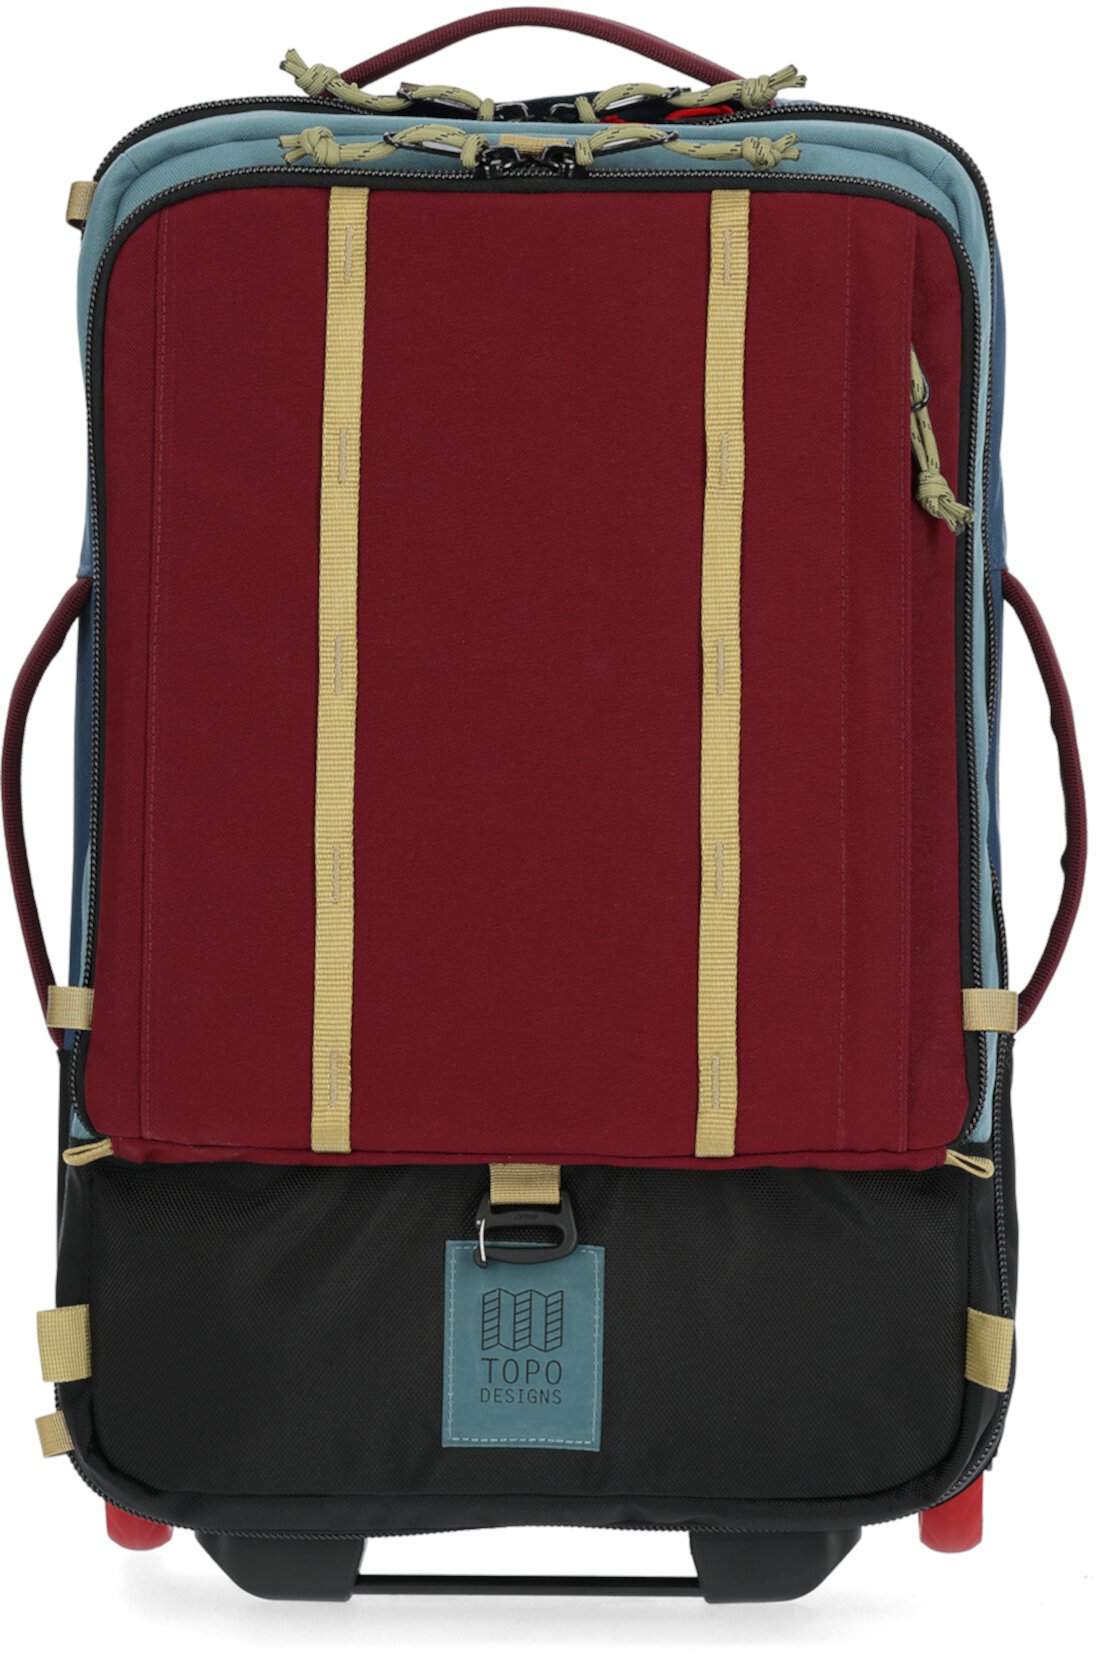 Ролик для дорожных сумок Global Topo Designs